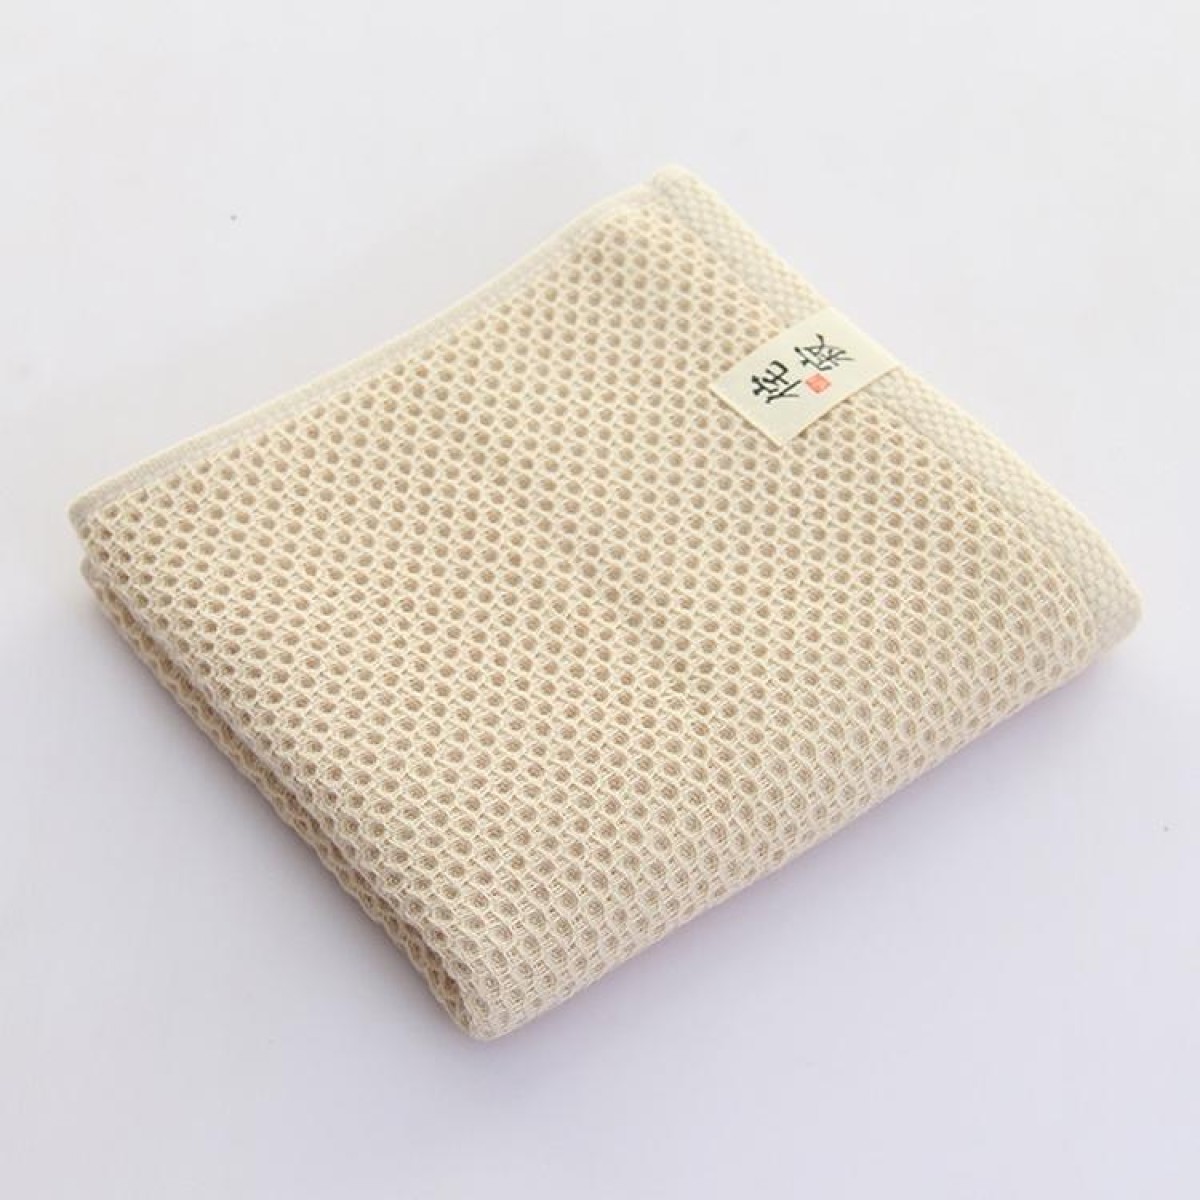 Honeycomb Cotton Towel, Size:33 x 34cm(Beige)